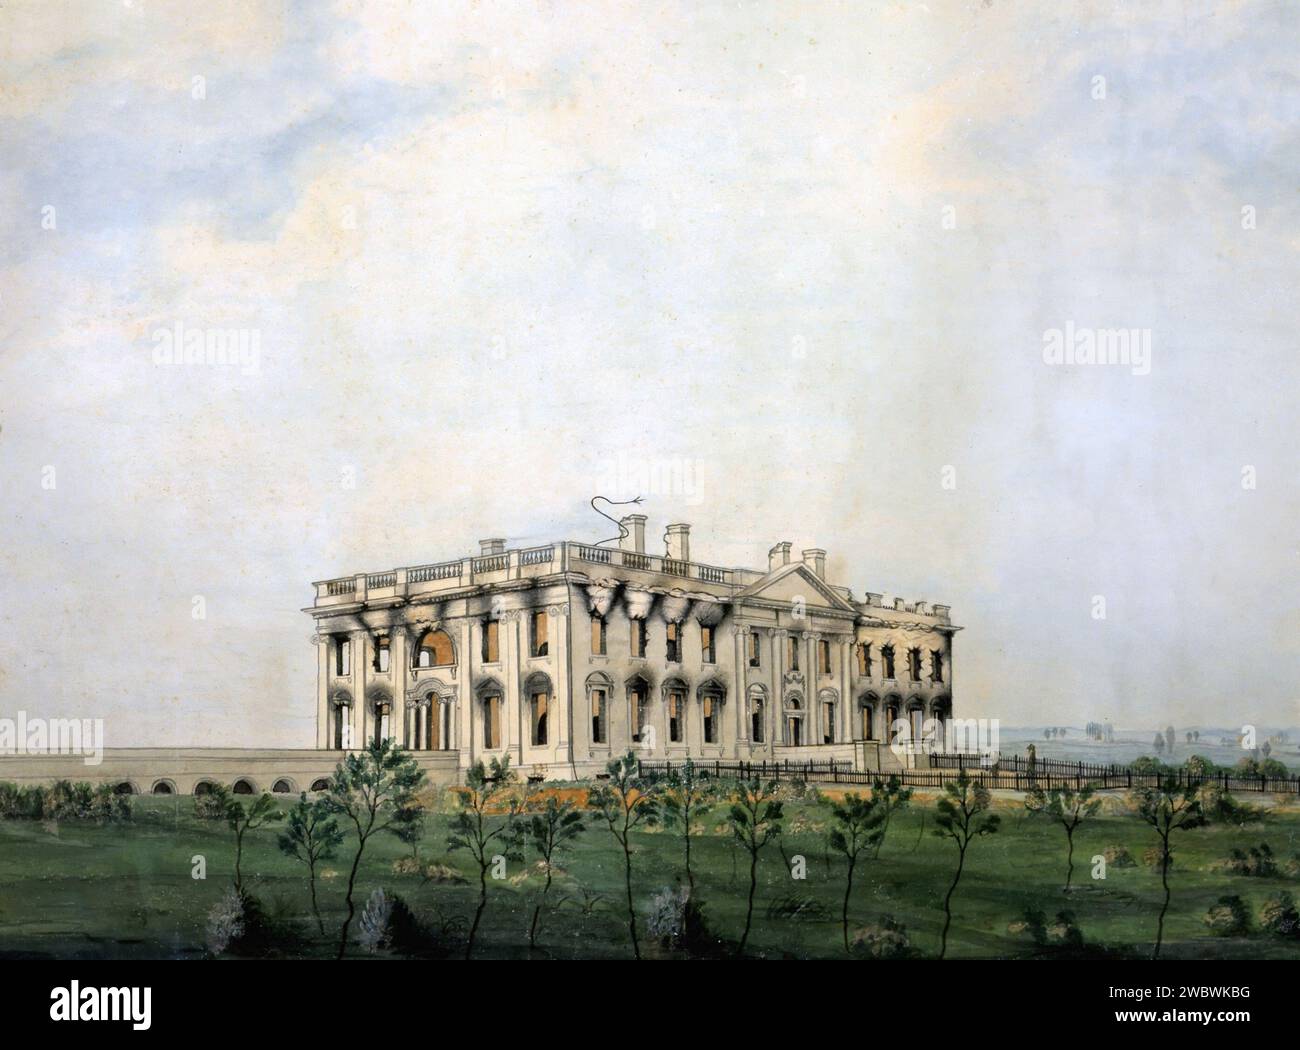 Maison Blanche 1800s. La Maison Blanche telle qu'elle semblait suite à l'incendie du 24 août 1814 Banque D'Images